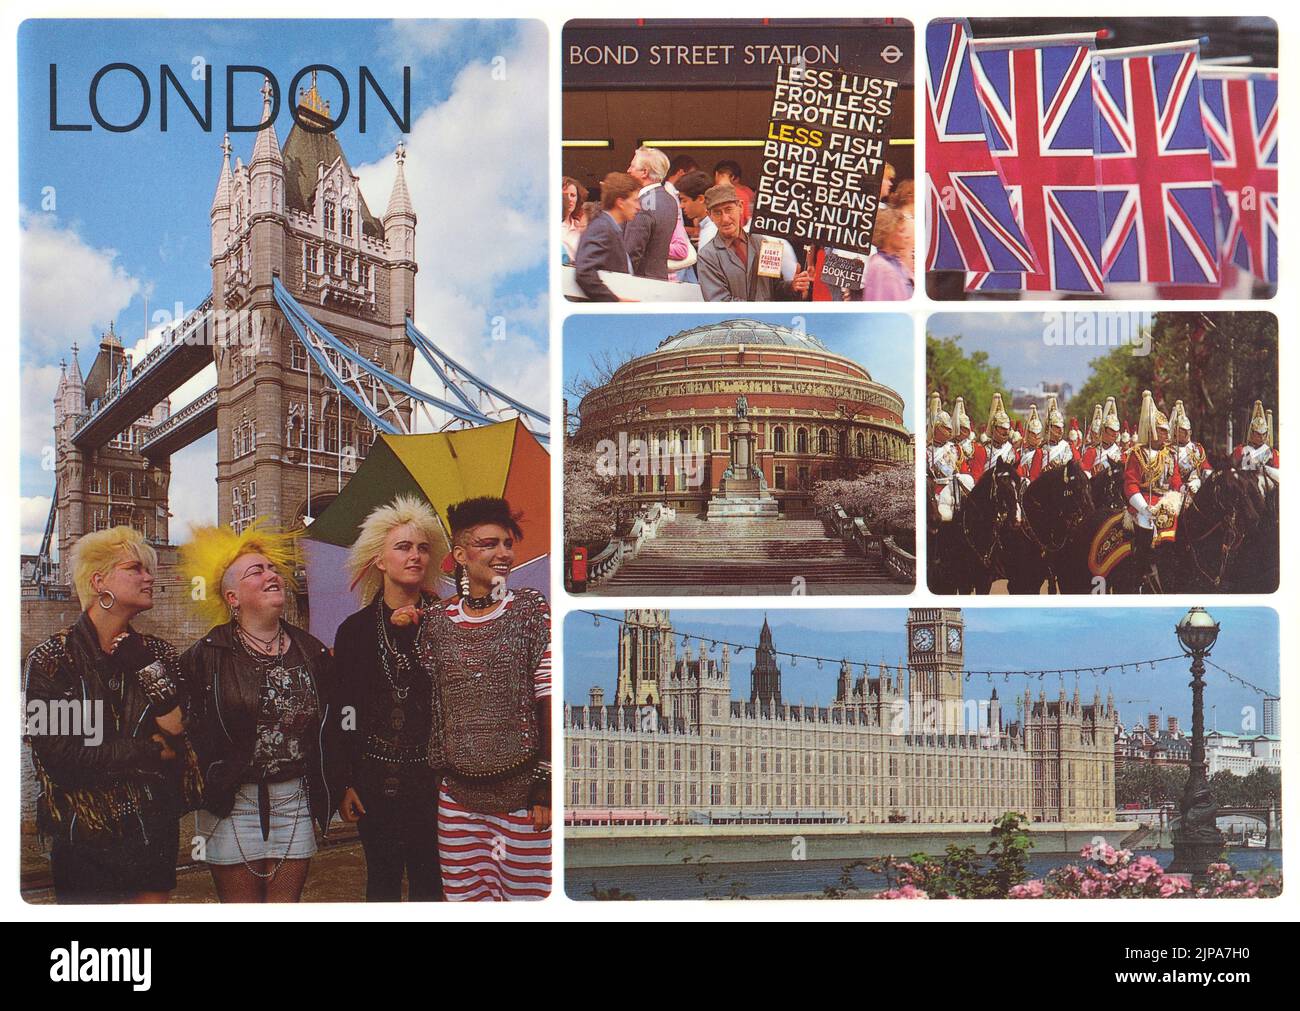 London-Postkarte aus den 1980er Jahren mit verschiedenen Ansichten und Attraktionen. Fotos von Chris Parker Stockfoto